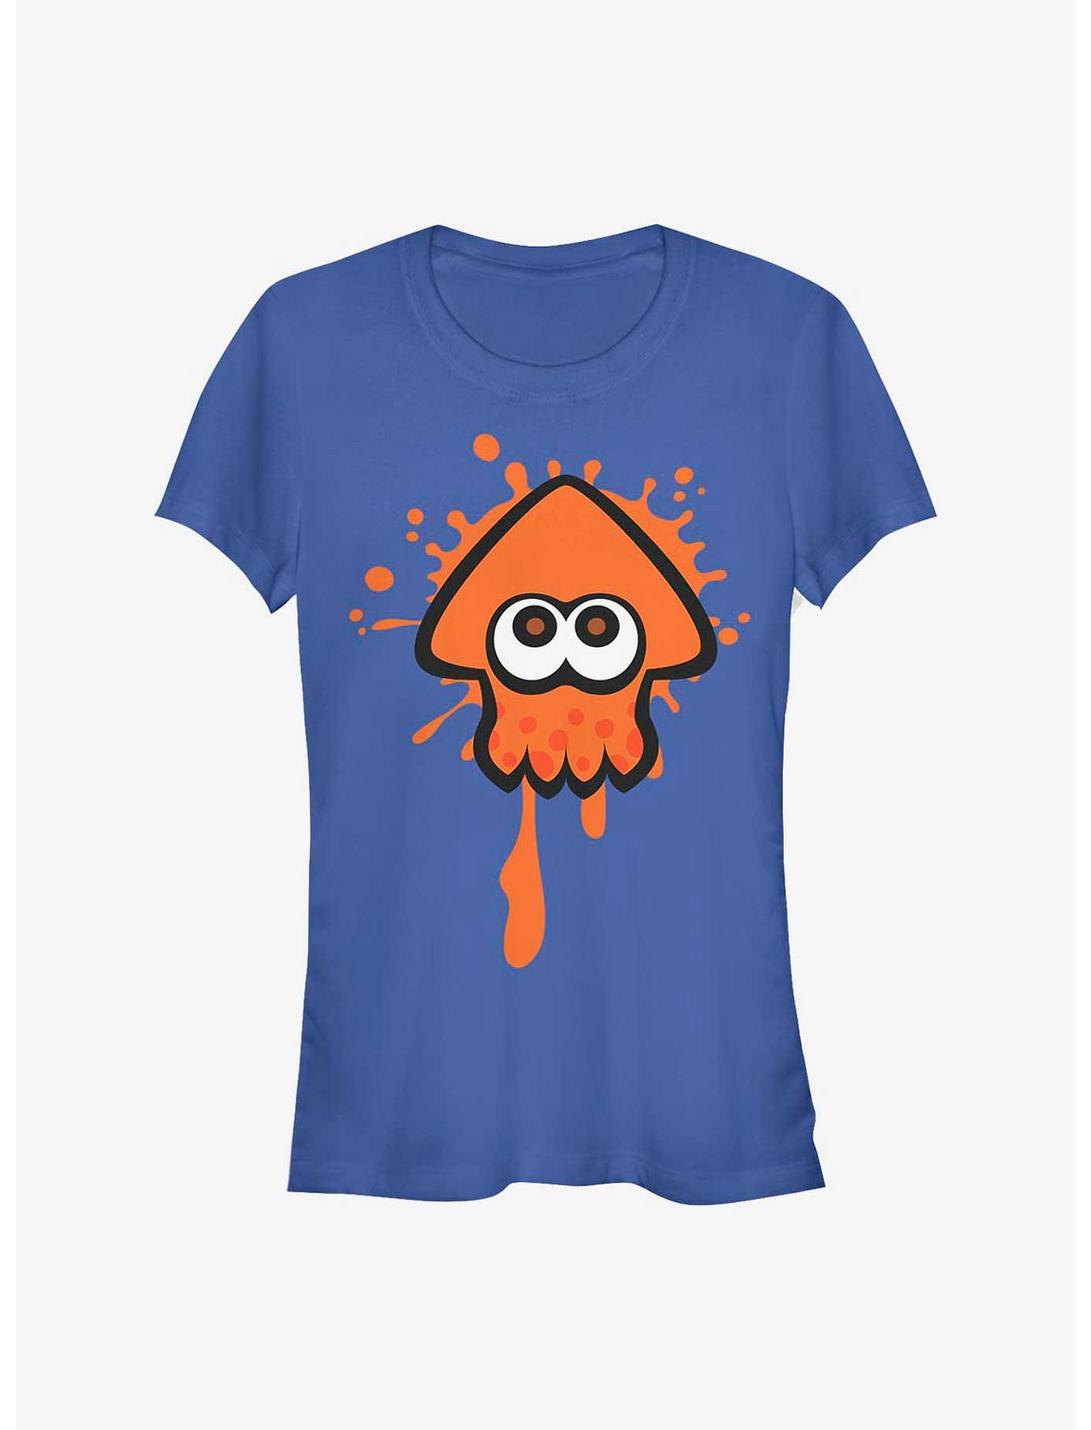 Nintendo Splatoon Orange Inkling Girls T-Shirt, ROYAL, hi-res